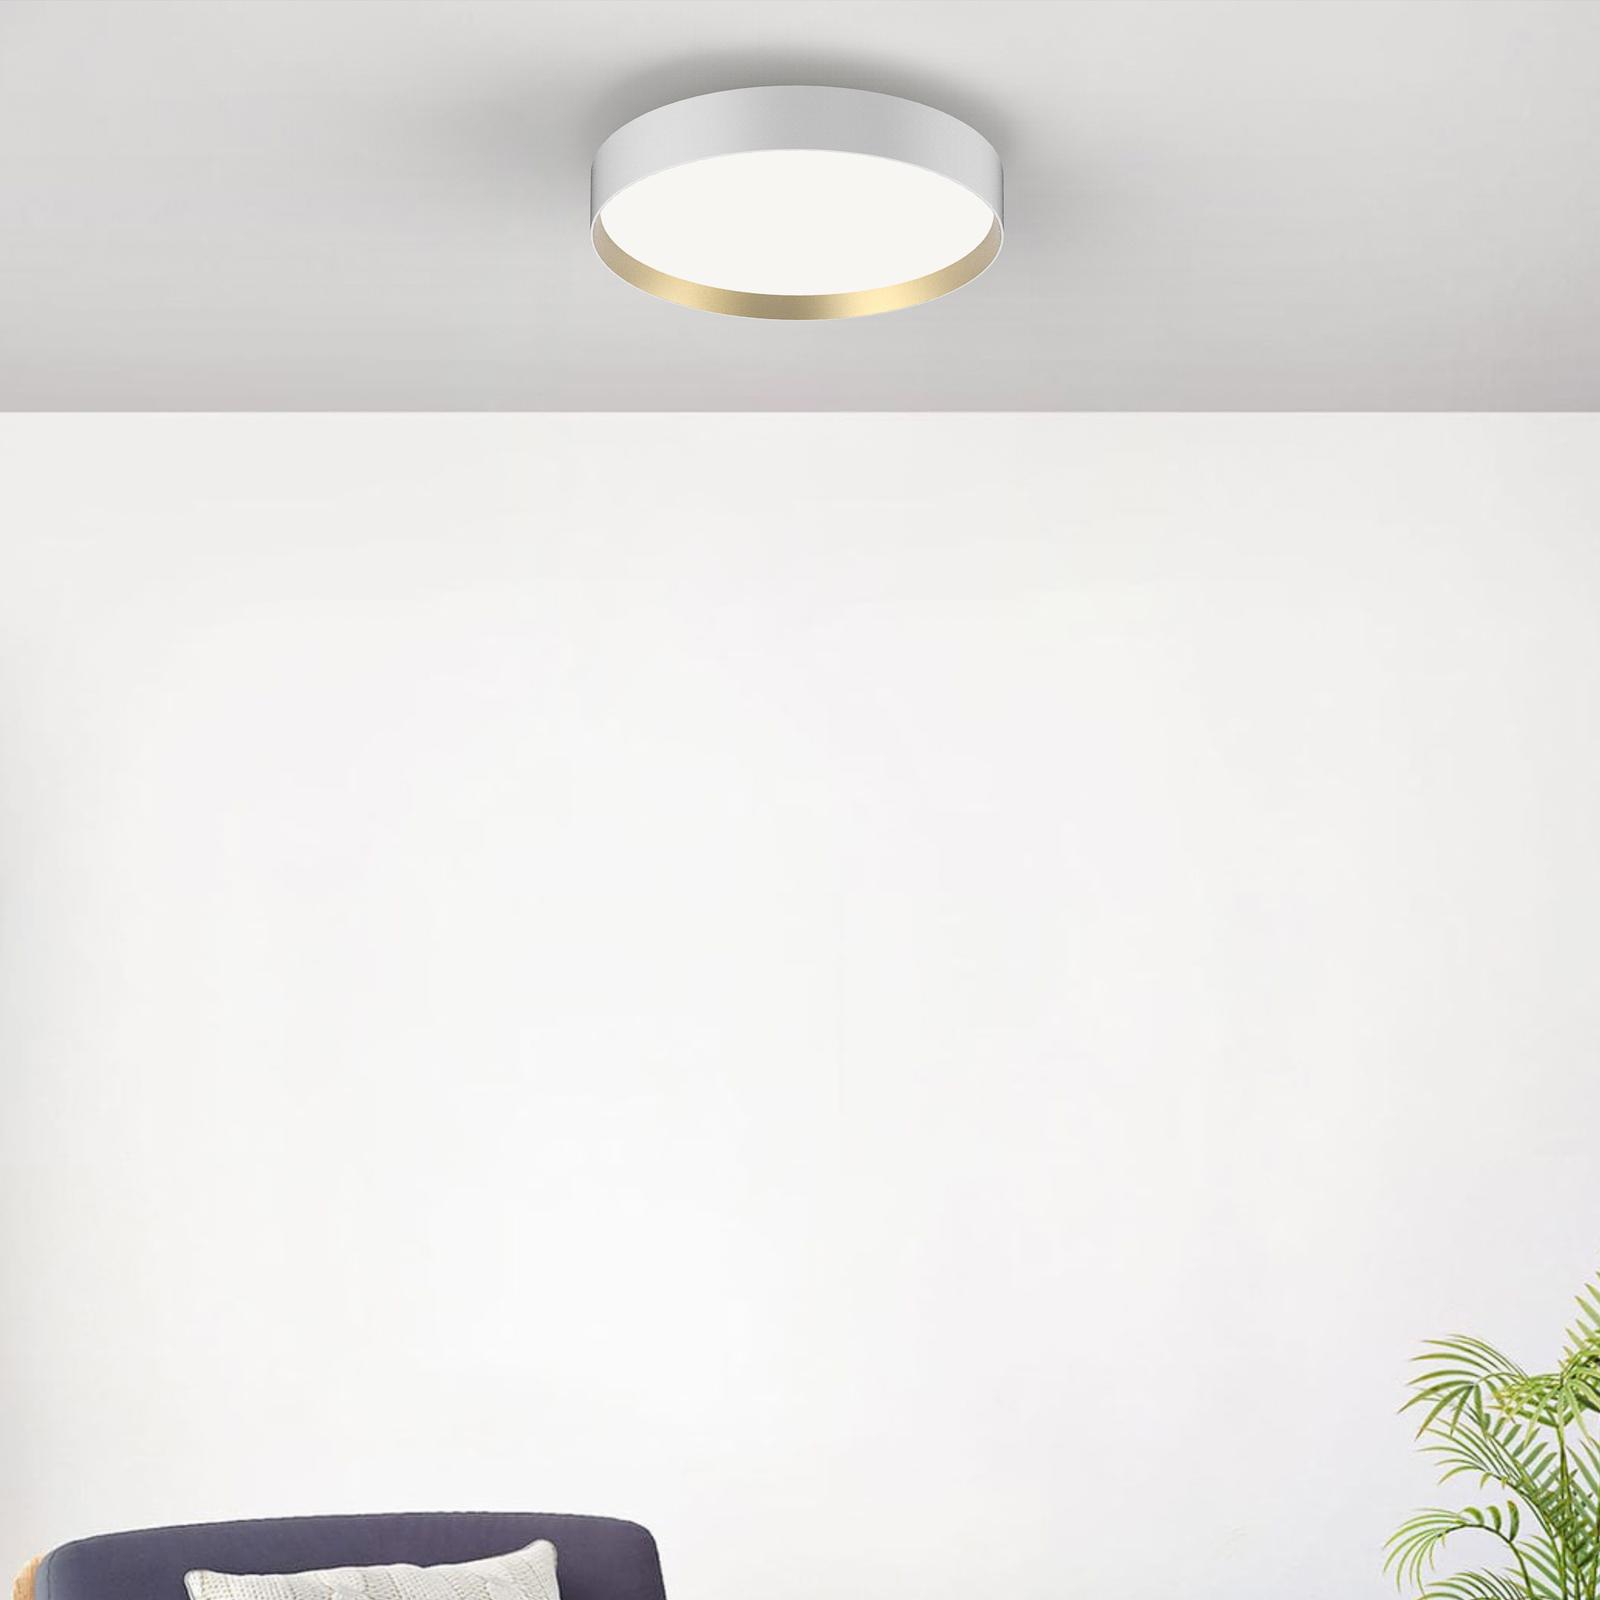 LOOM DESIGN Lucia LED ceiling lamp Ø35cm white/gold